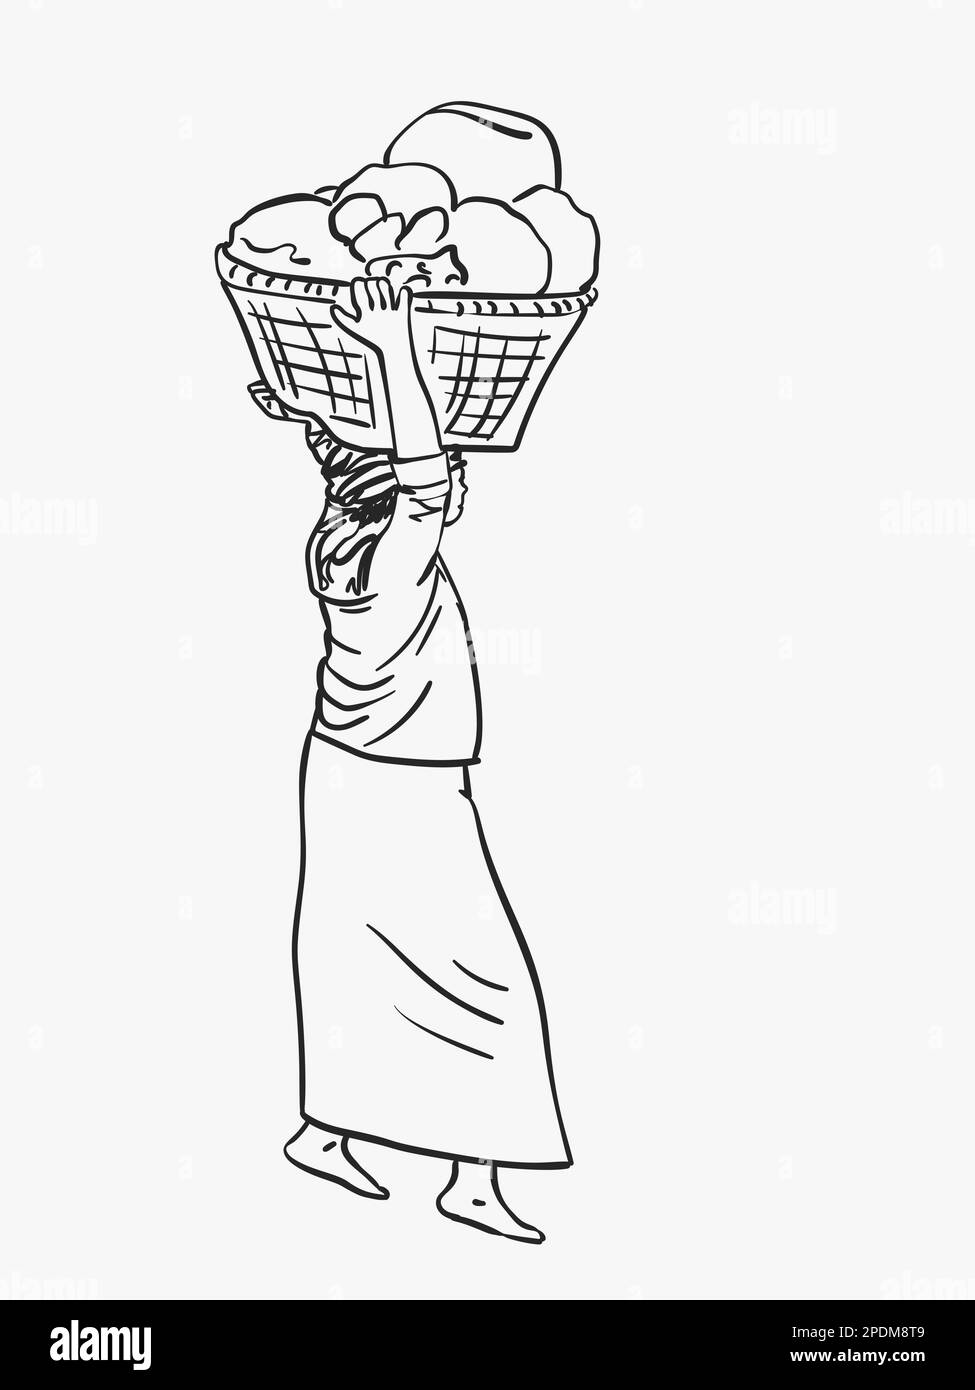 La femme birmane de Longyi porte un grand panier sur sa tête, un croquis vectoriel, une illustration linéaire dessinée à la main Illustration de Vecteur